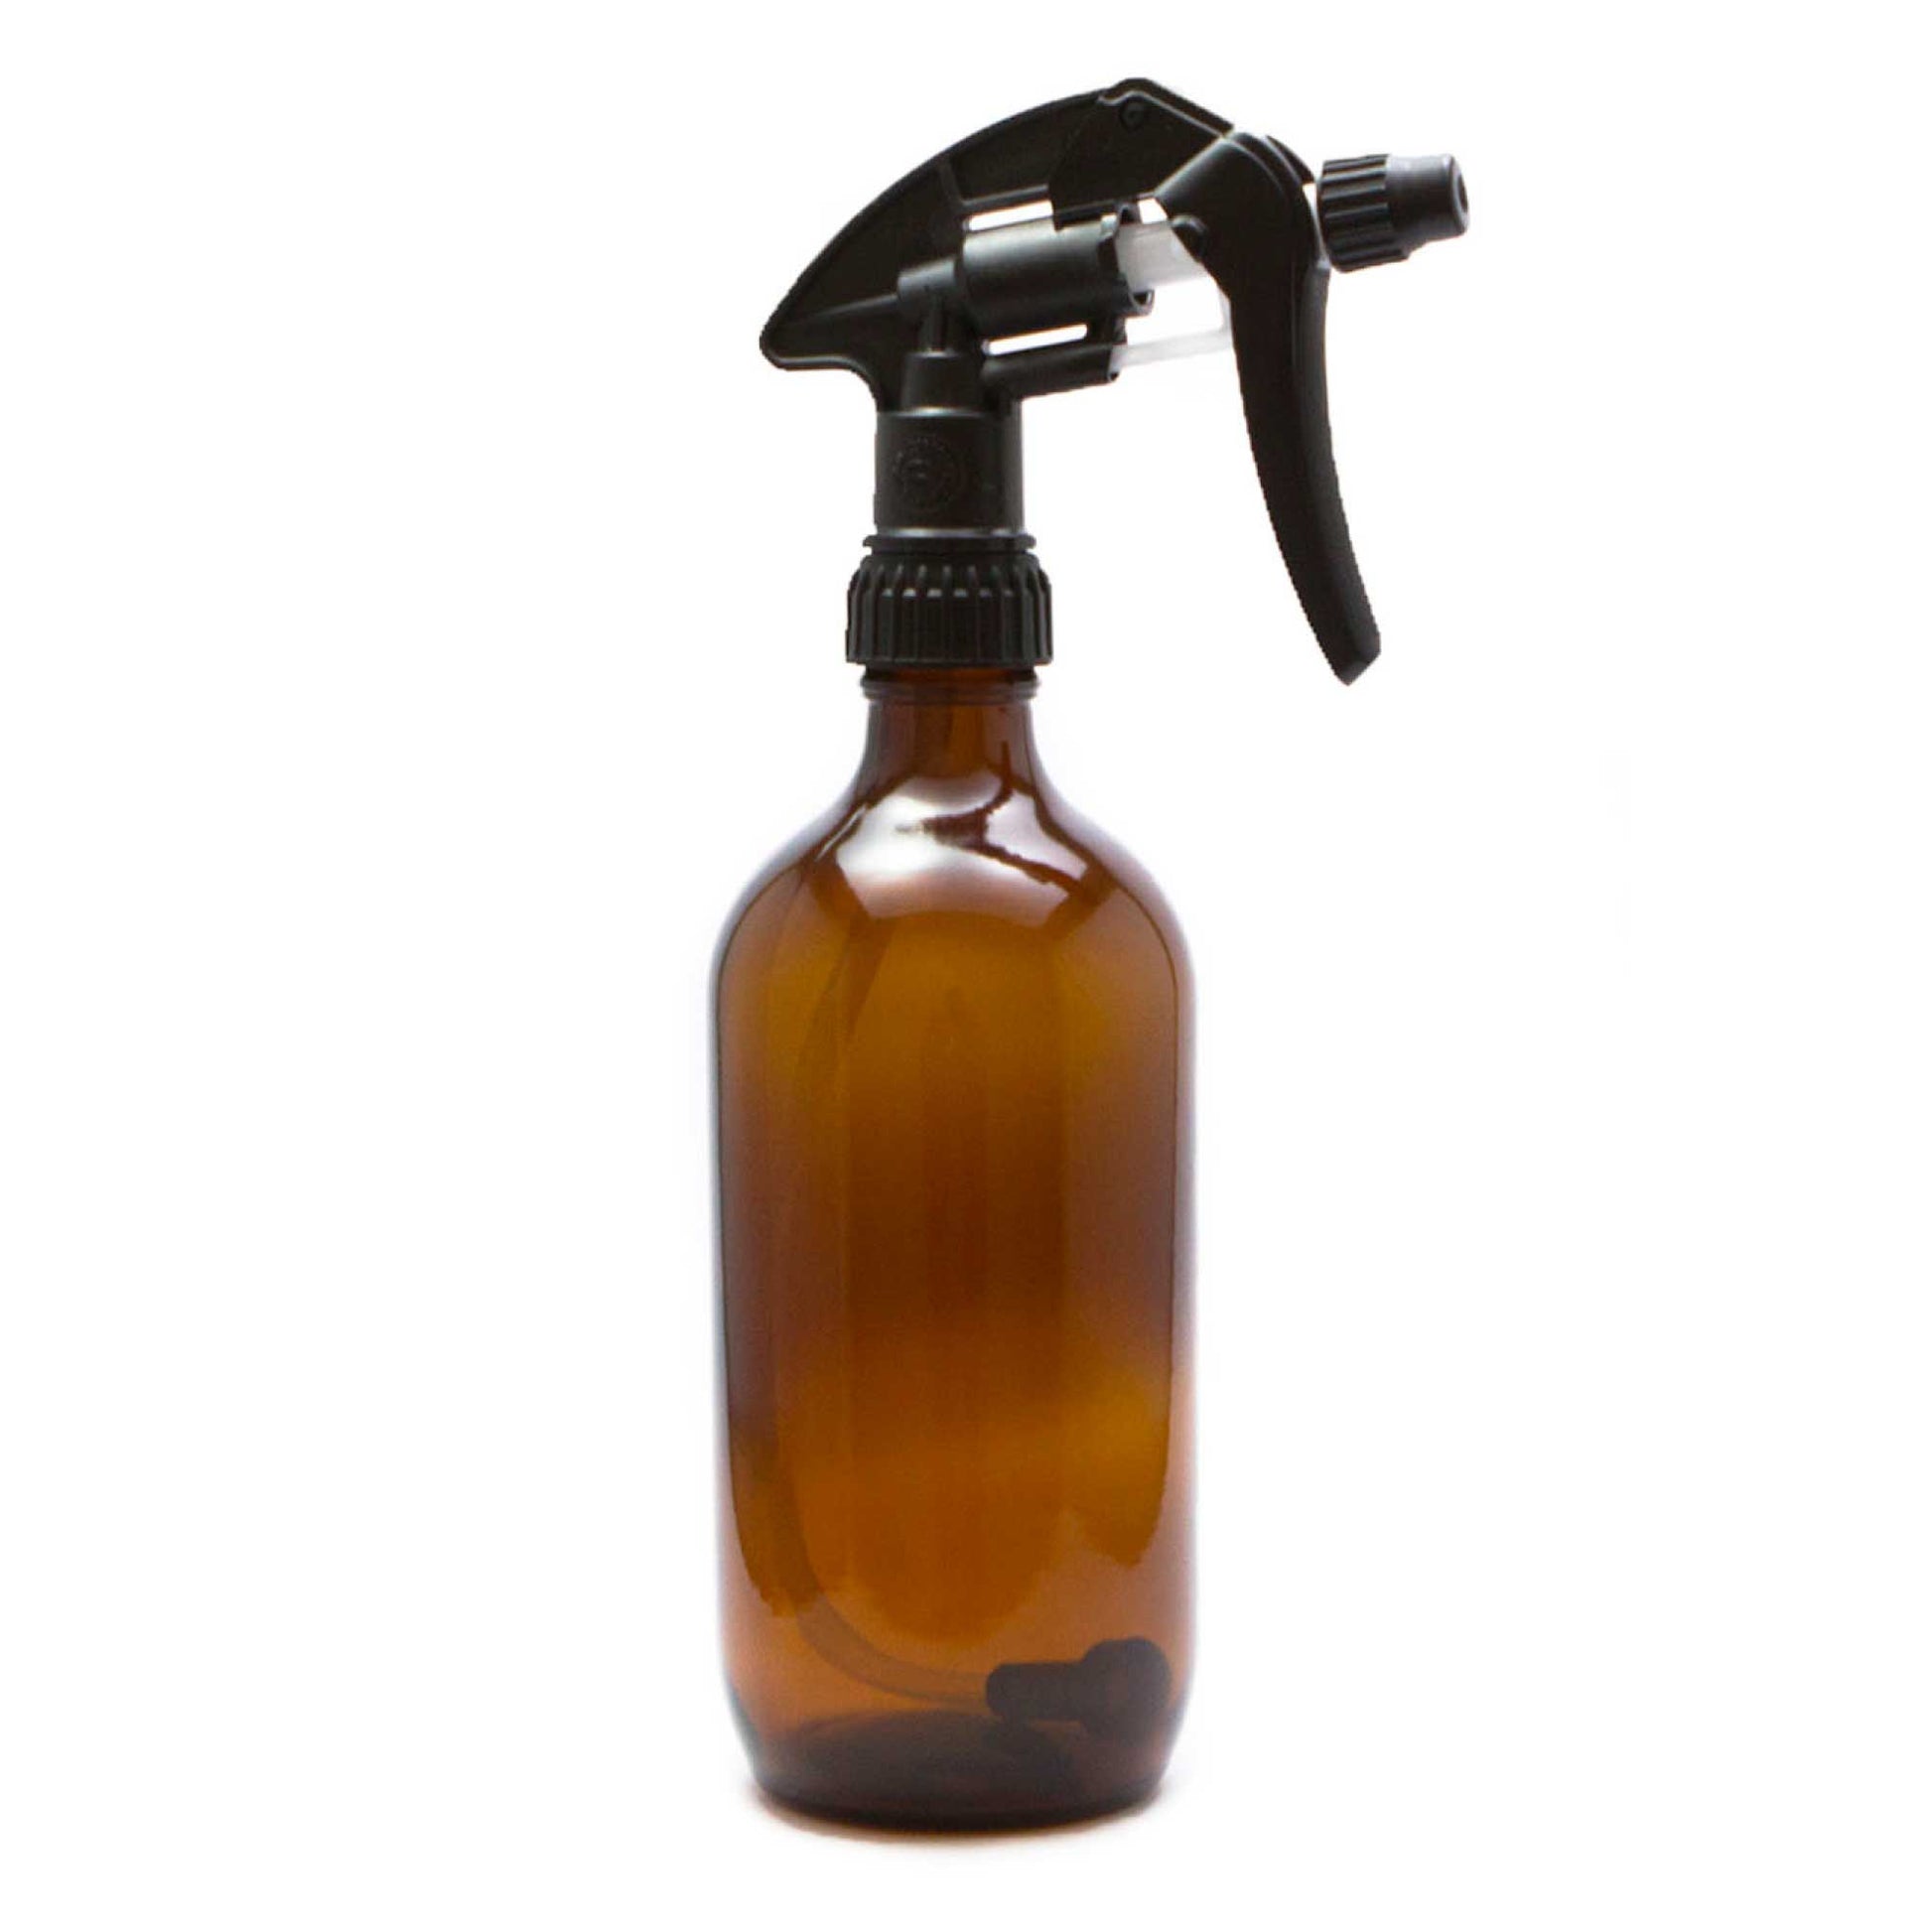 25x 500ml Amber Glass Spray Bottle + Trigger - Refillable Oil Dispenser